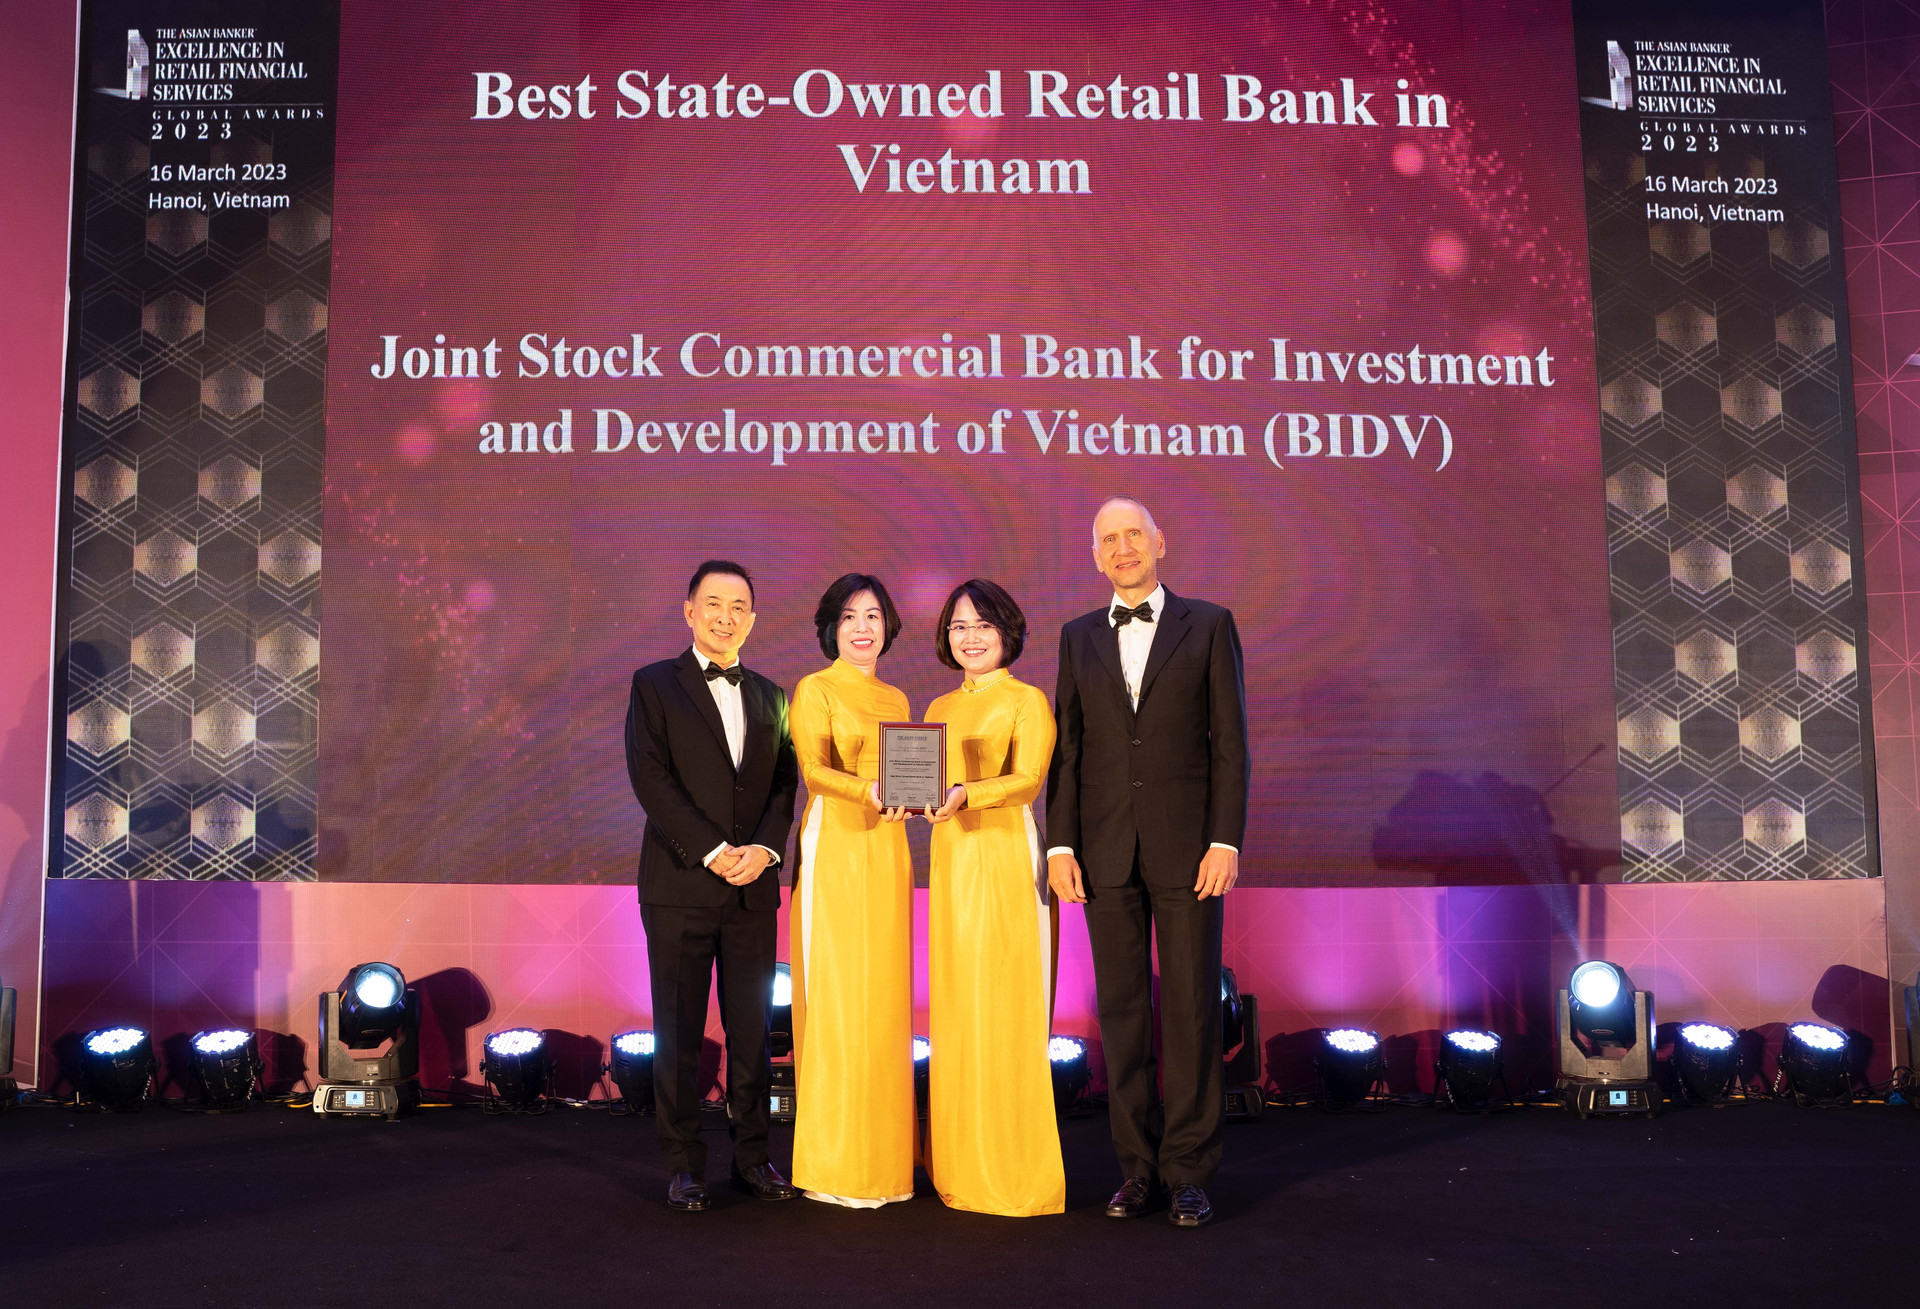 bidv-vinh-du-nhan-danh-hieu-ngan-hang-ban-le-tot-nhat-viet-nam-lan-thu-8-hang-muc-state-owned-retail-bank-nam-2023-.jpg